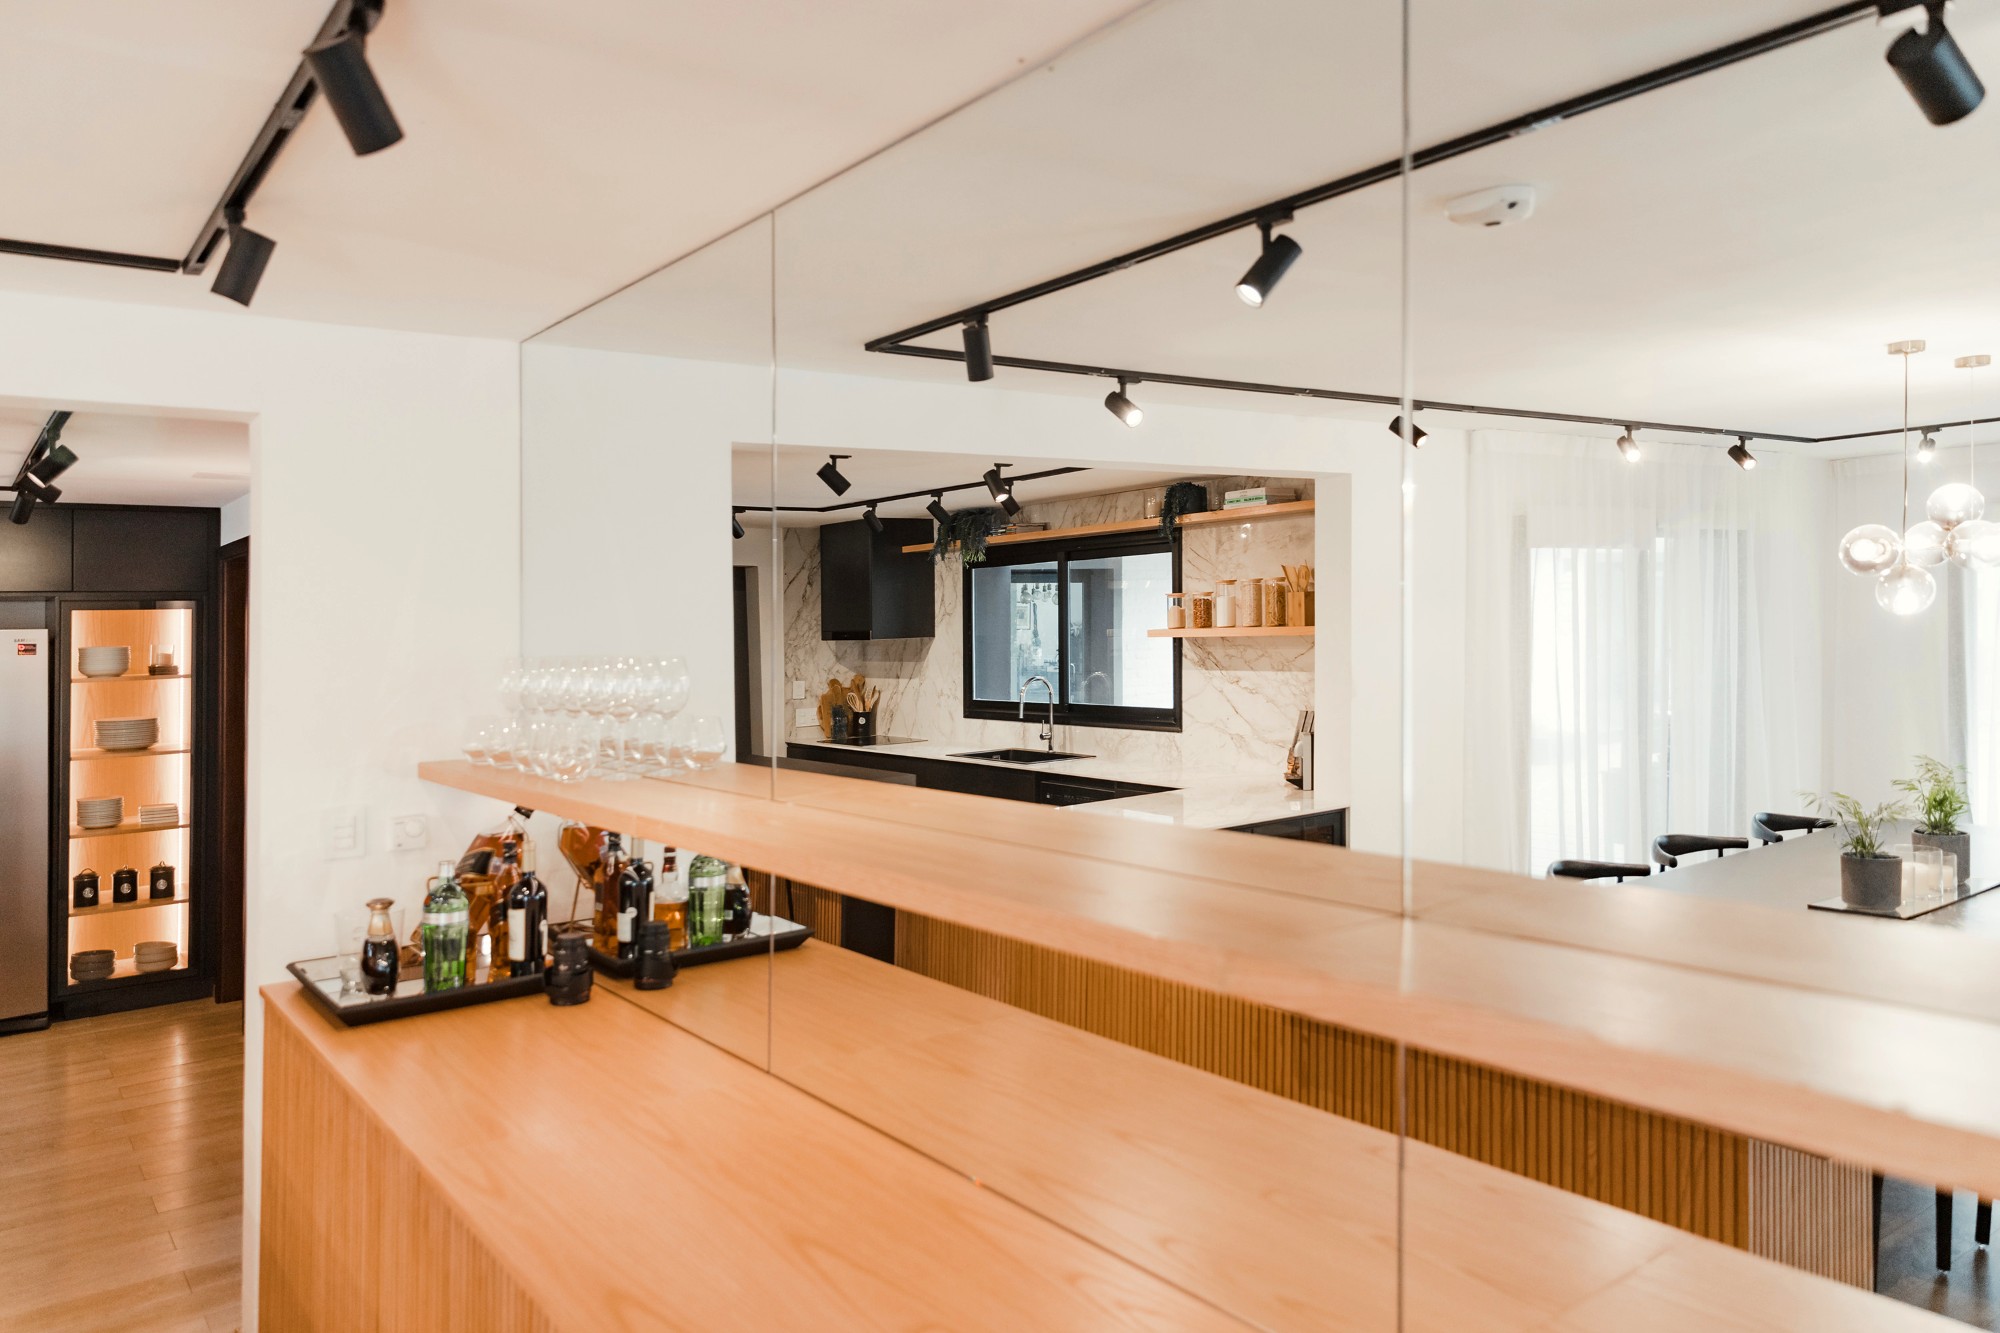 Bildnummer 36 des aktuellen Abschnitts von Kitchen and dining room merged by a precise design von Cosentino Deutschland